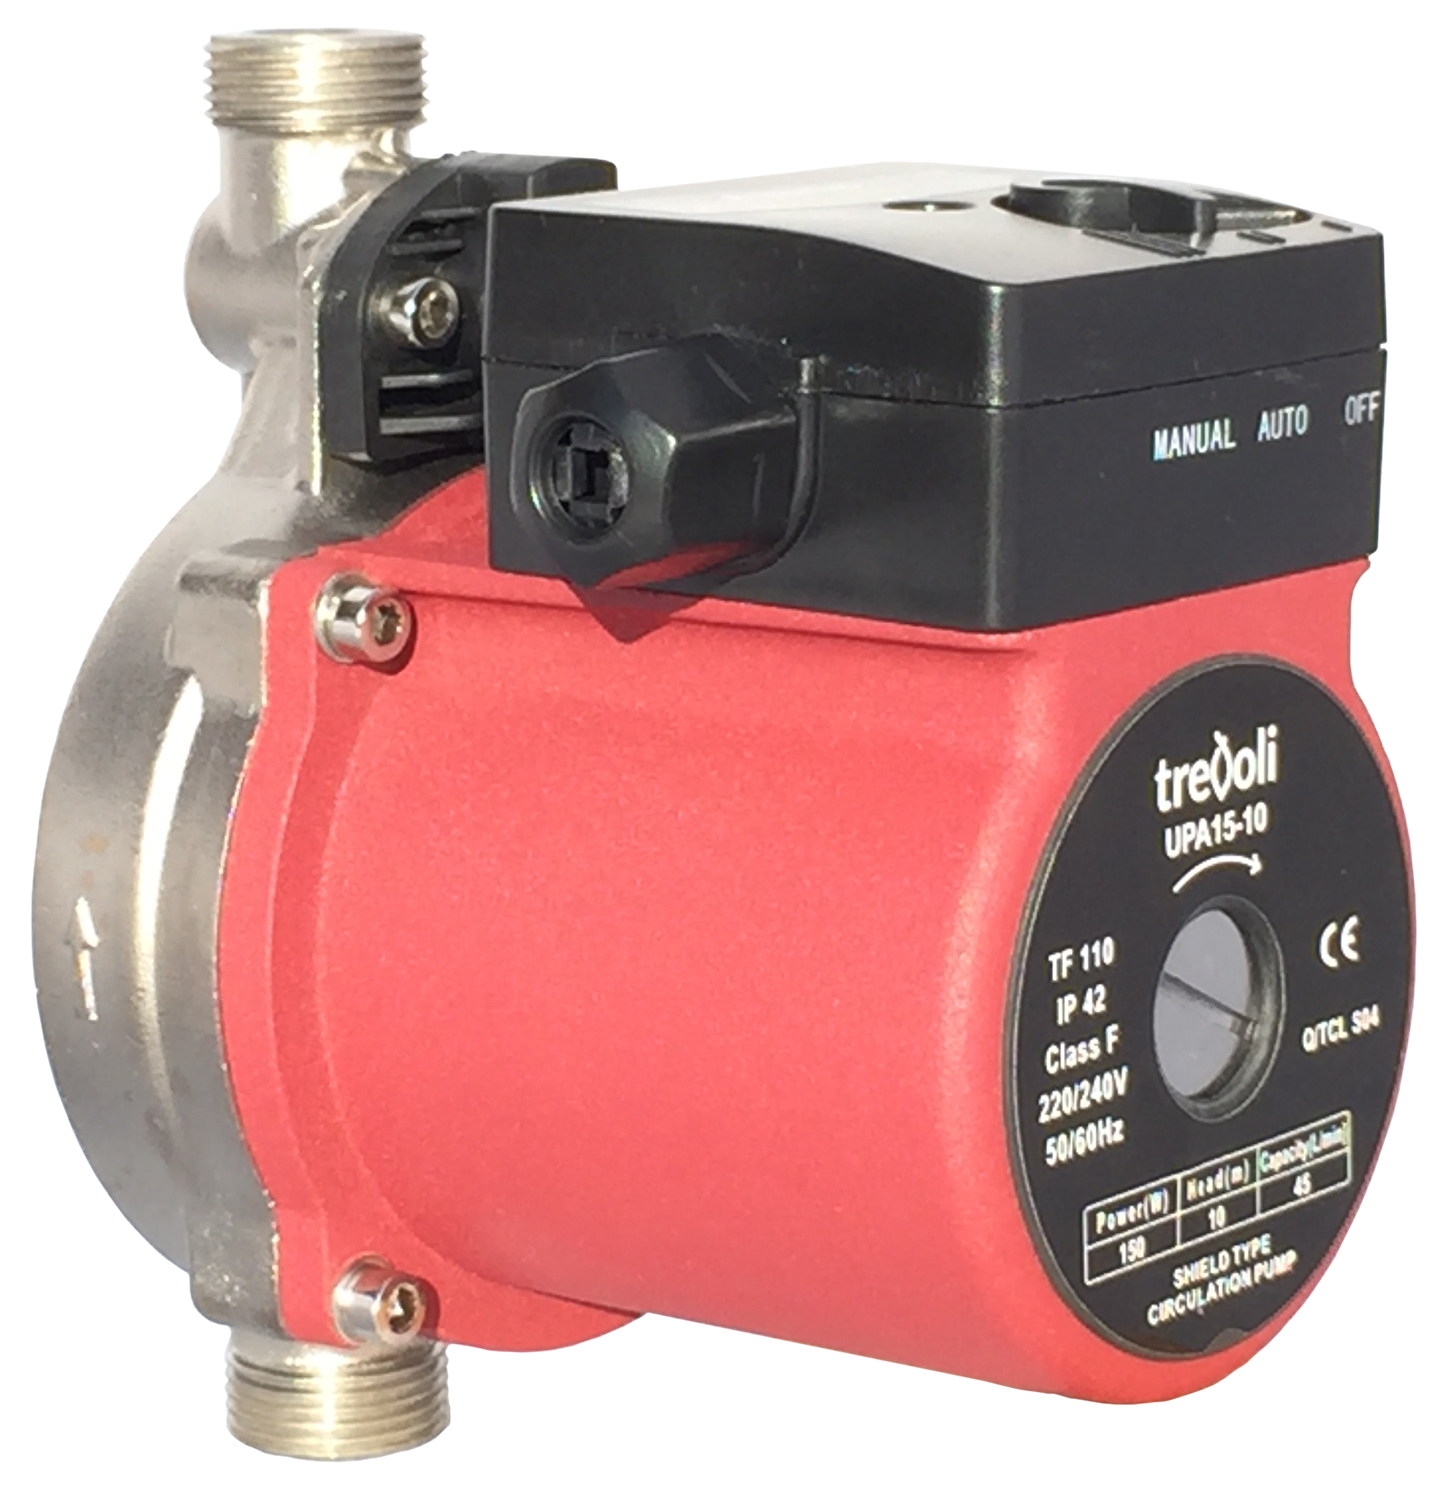 Trevoli – Upa 15 10 Hot Water Booster Pump Trevoli